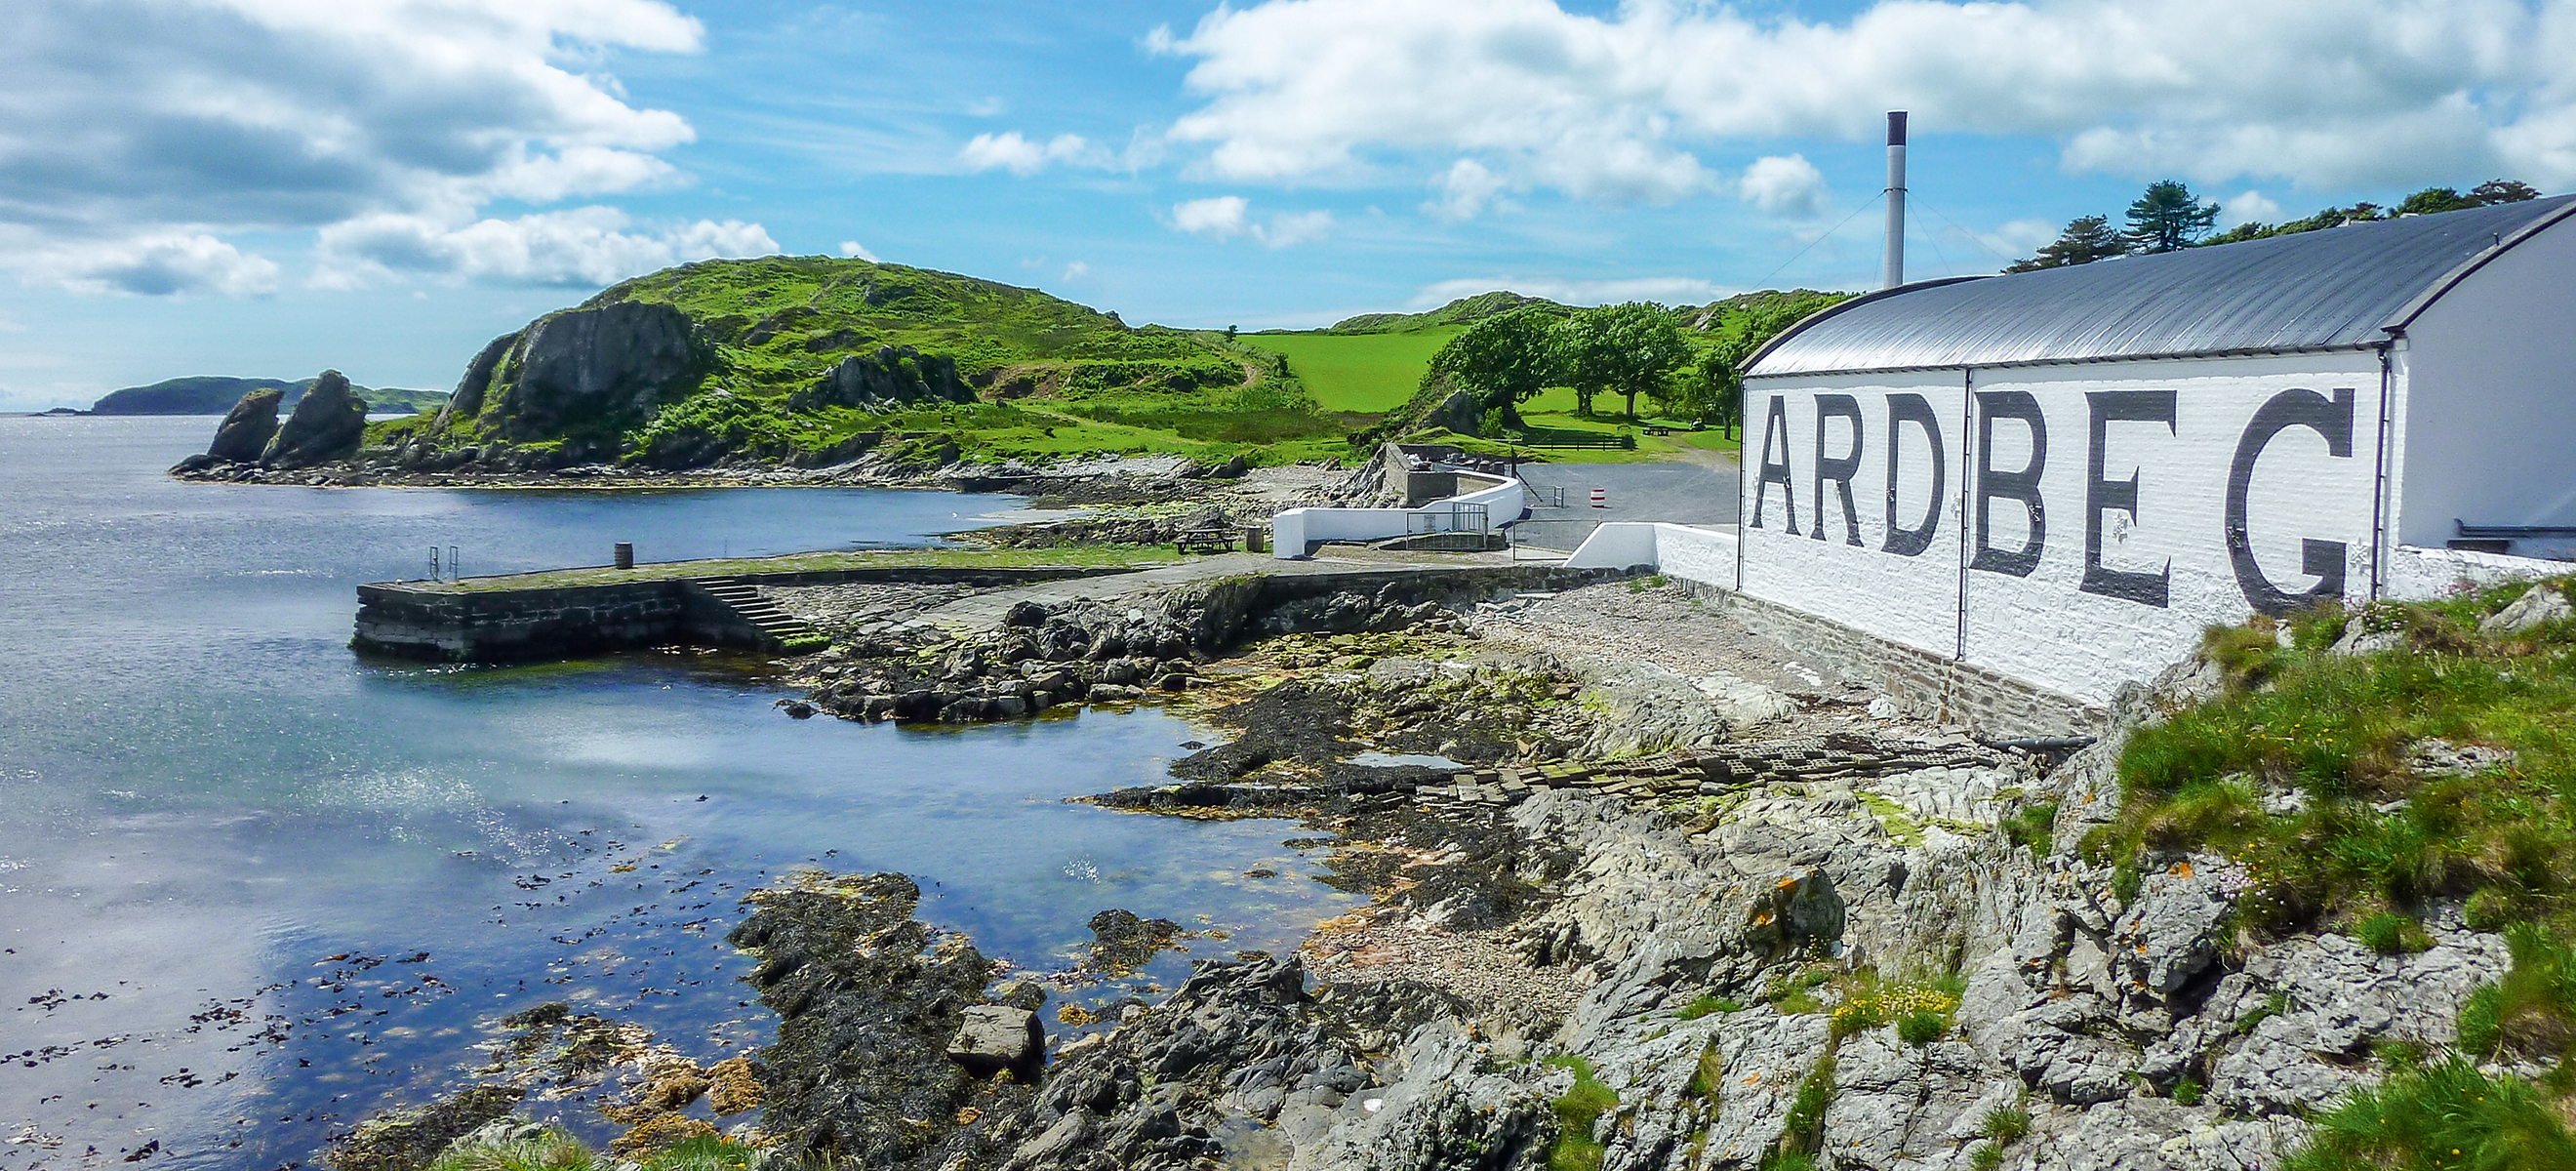 Am Südufer der Insel Islay liegt die Whisky-Destillerie Ardbeg, deren Ursprünge bis in das Jahr 1794 zurückreichen.